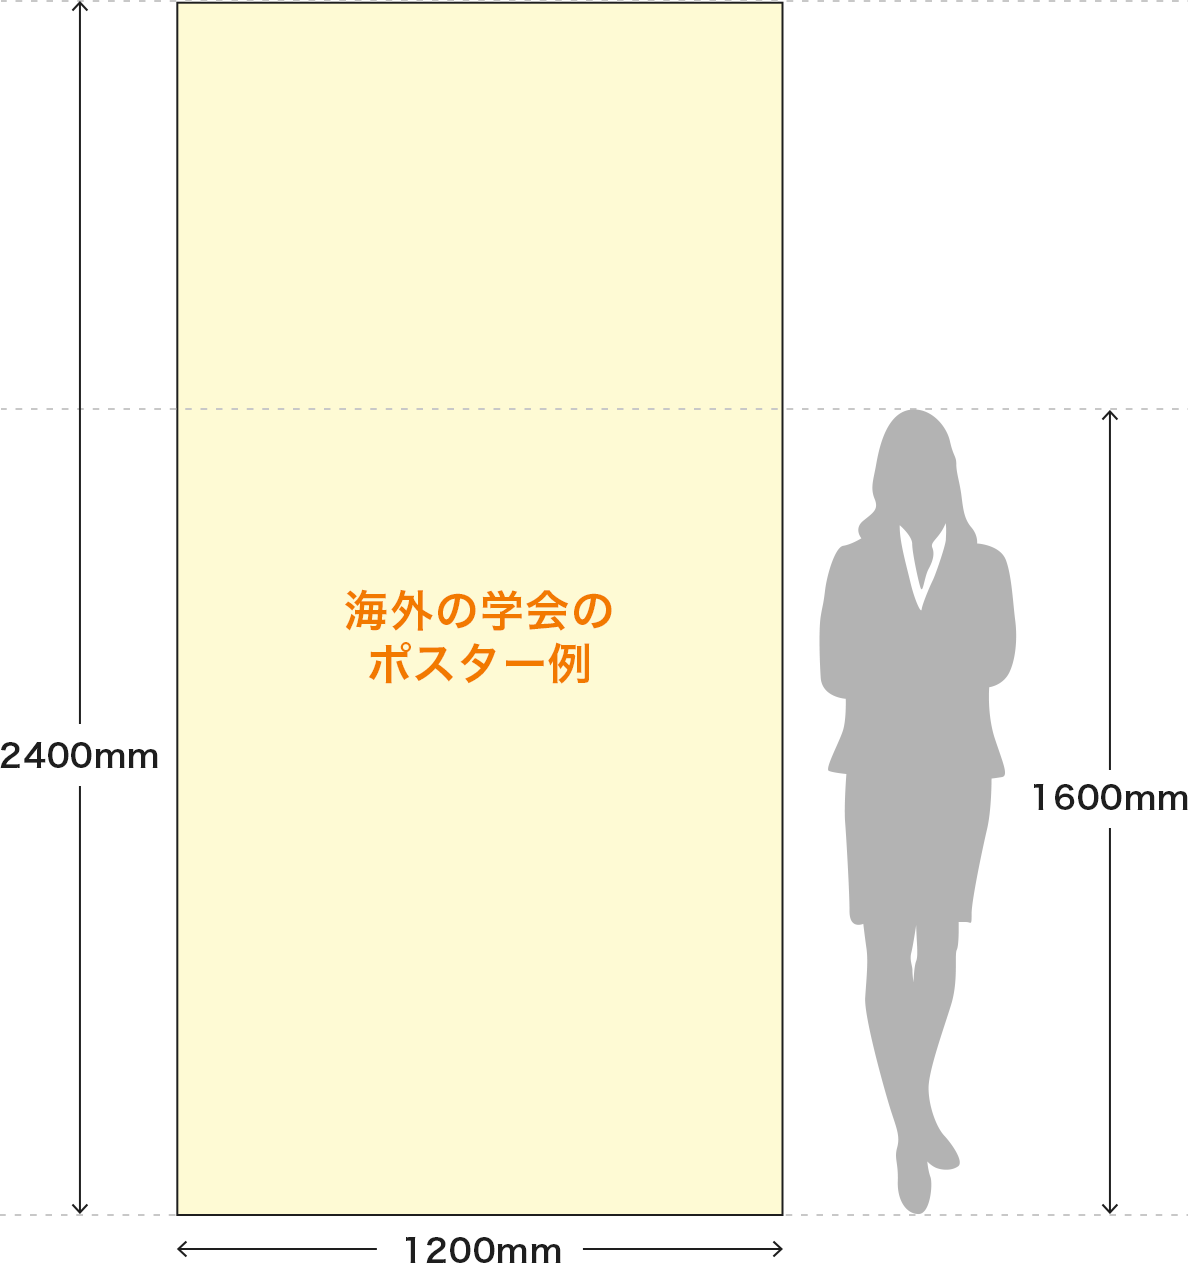 海外の学会のポスターと1600mmの身長の人との比較